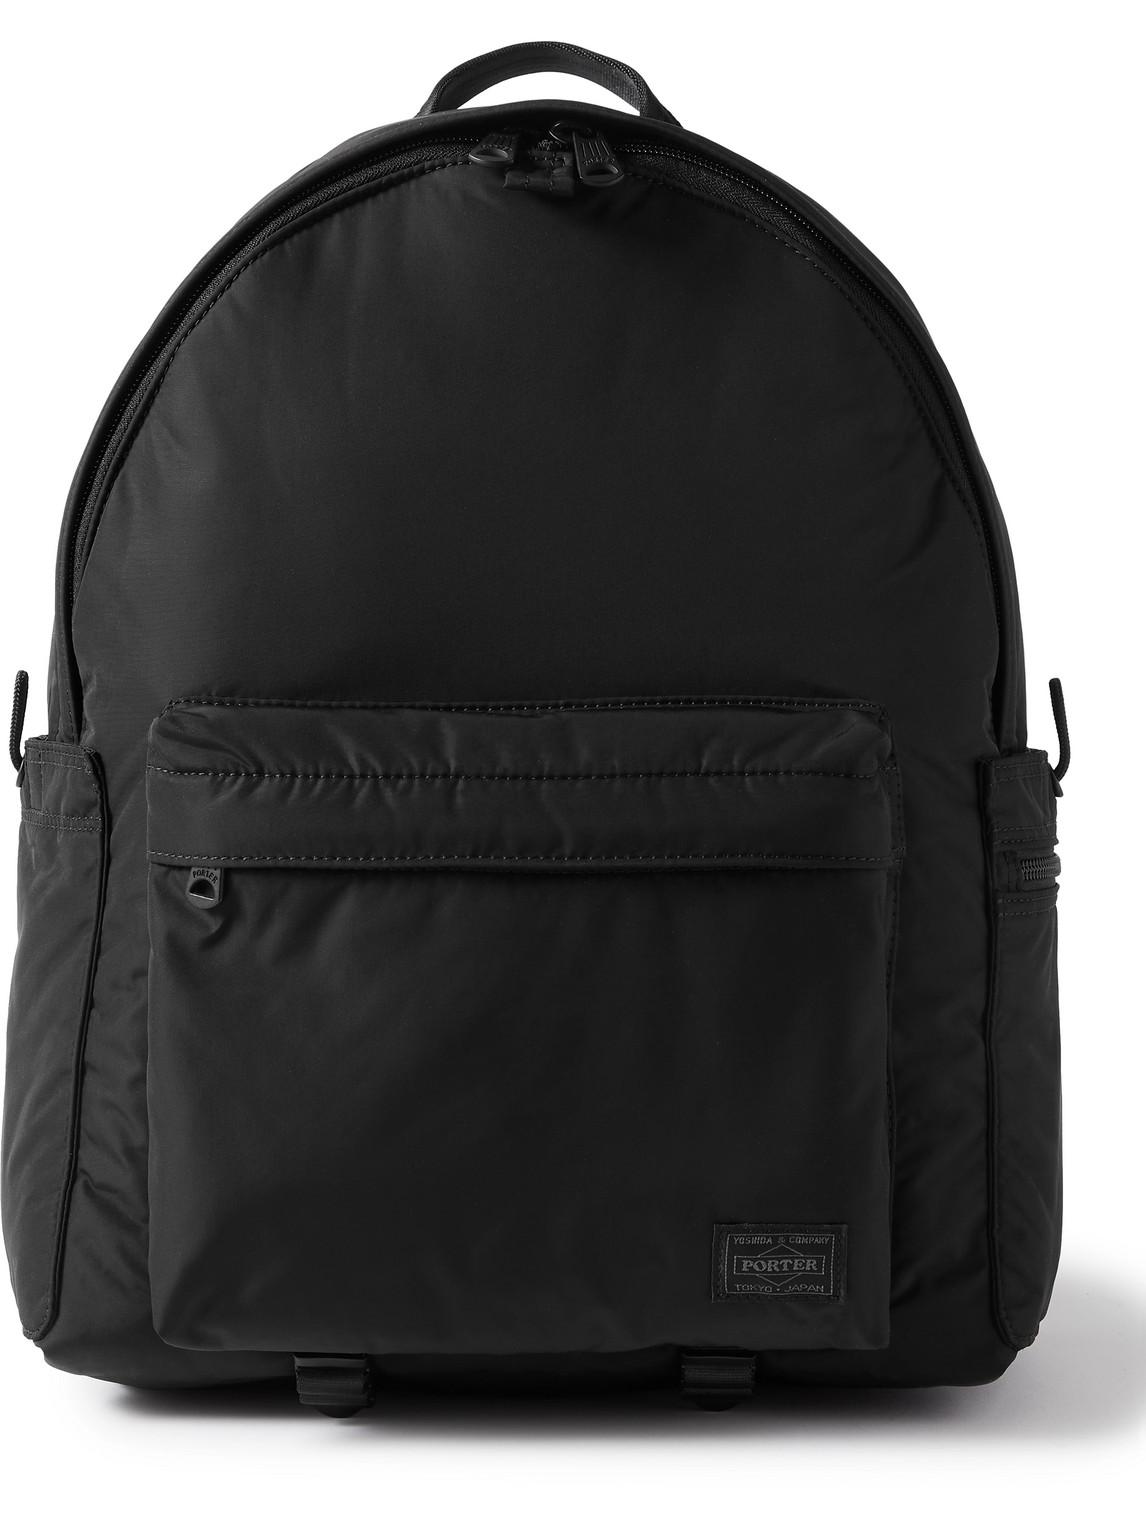 Porter-Yoshida and Co Senses Nylon Backpack in Black for Men | Lyst